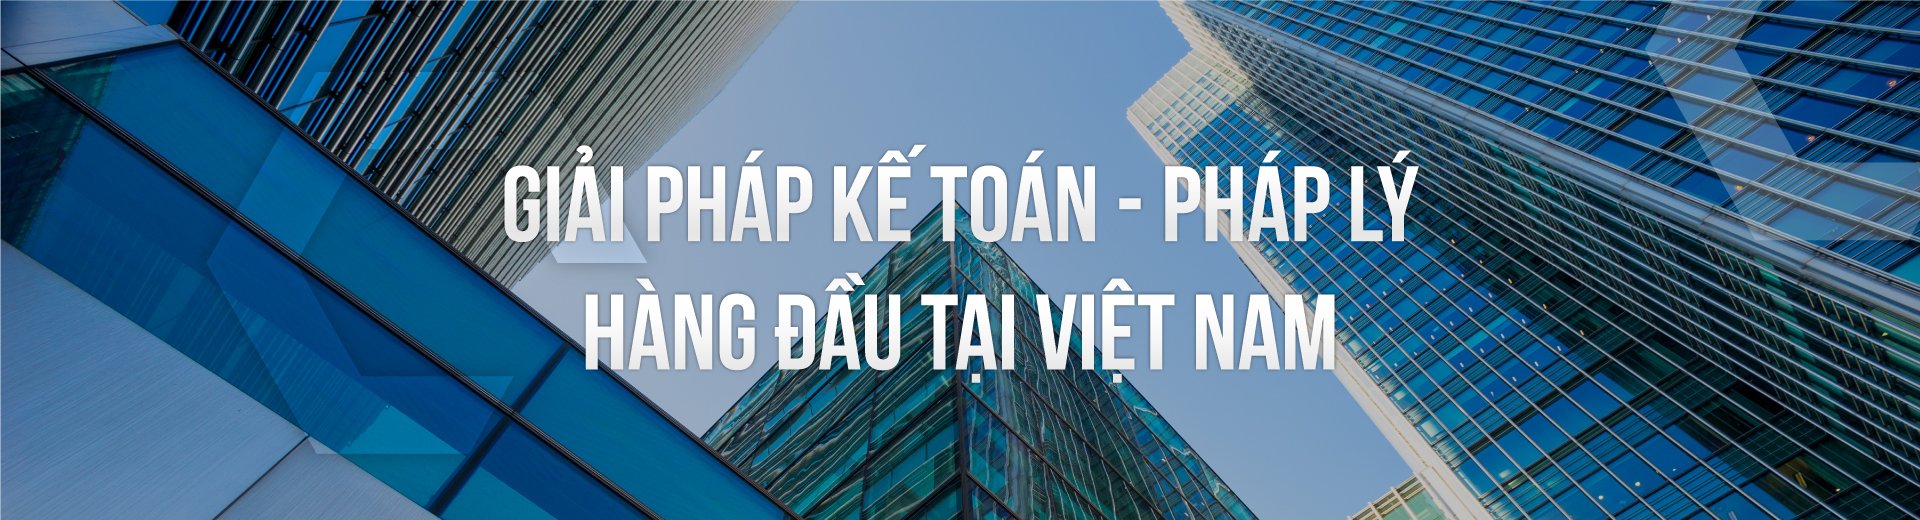 Kế toán Quốc Việt - Dịch vụ kế toán chất lượng tại Hà Nội